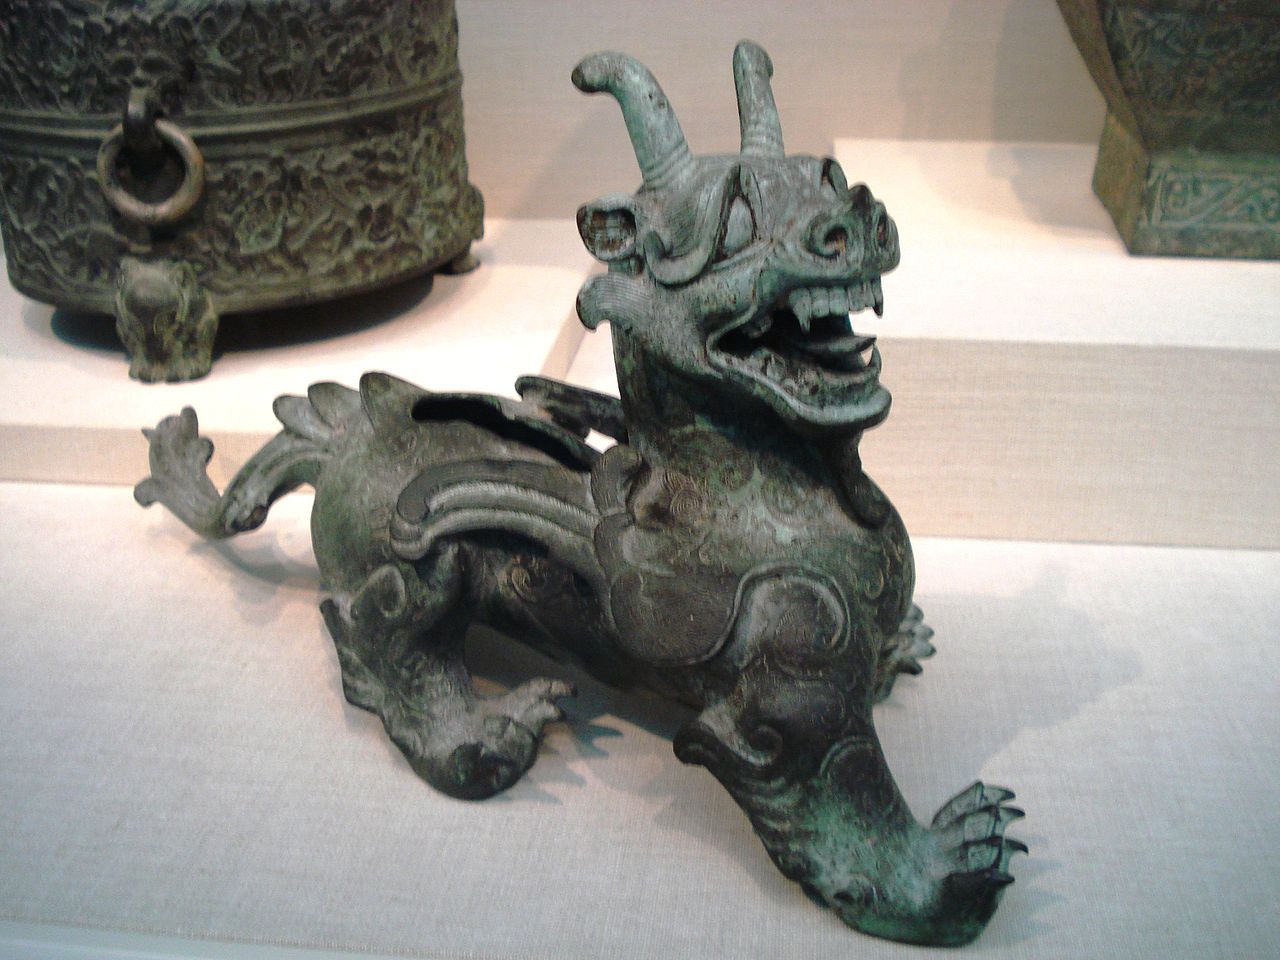 едно от най-известните произведения на изкуството от времето на династията Хан